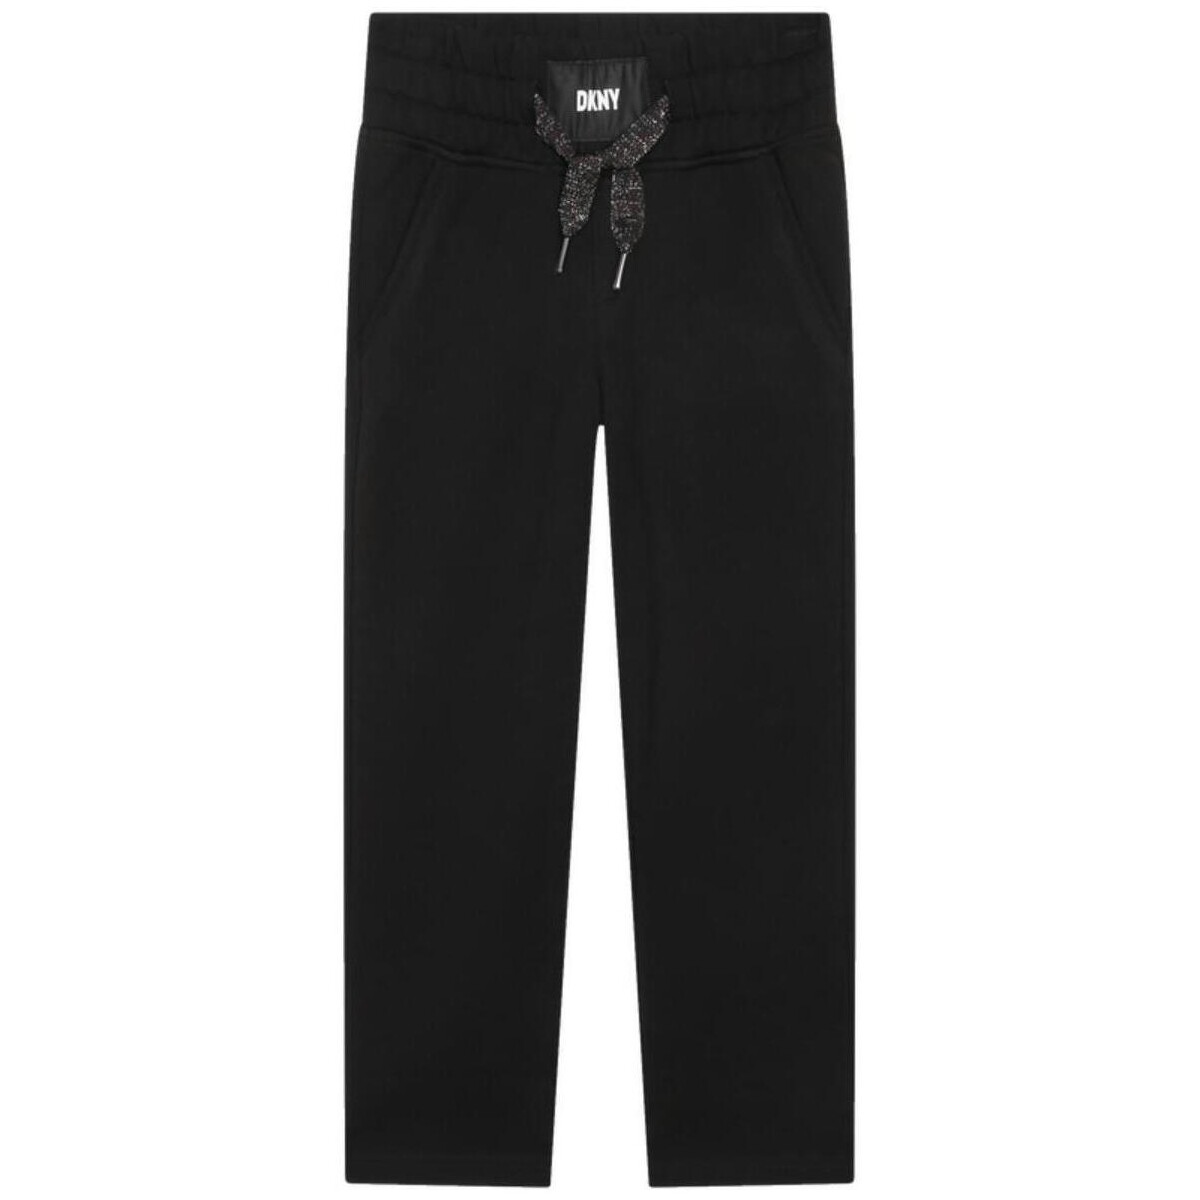 Textiel Jongens Broeken / Pantalons Dkny  Zwart